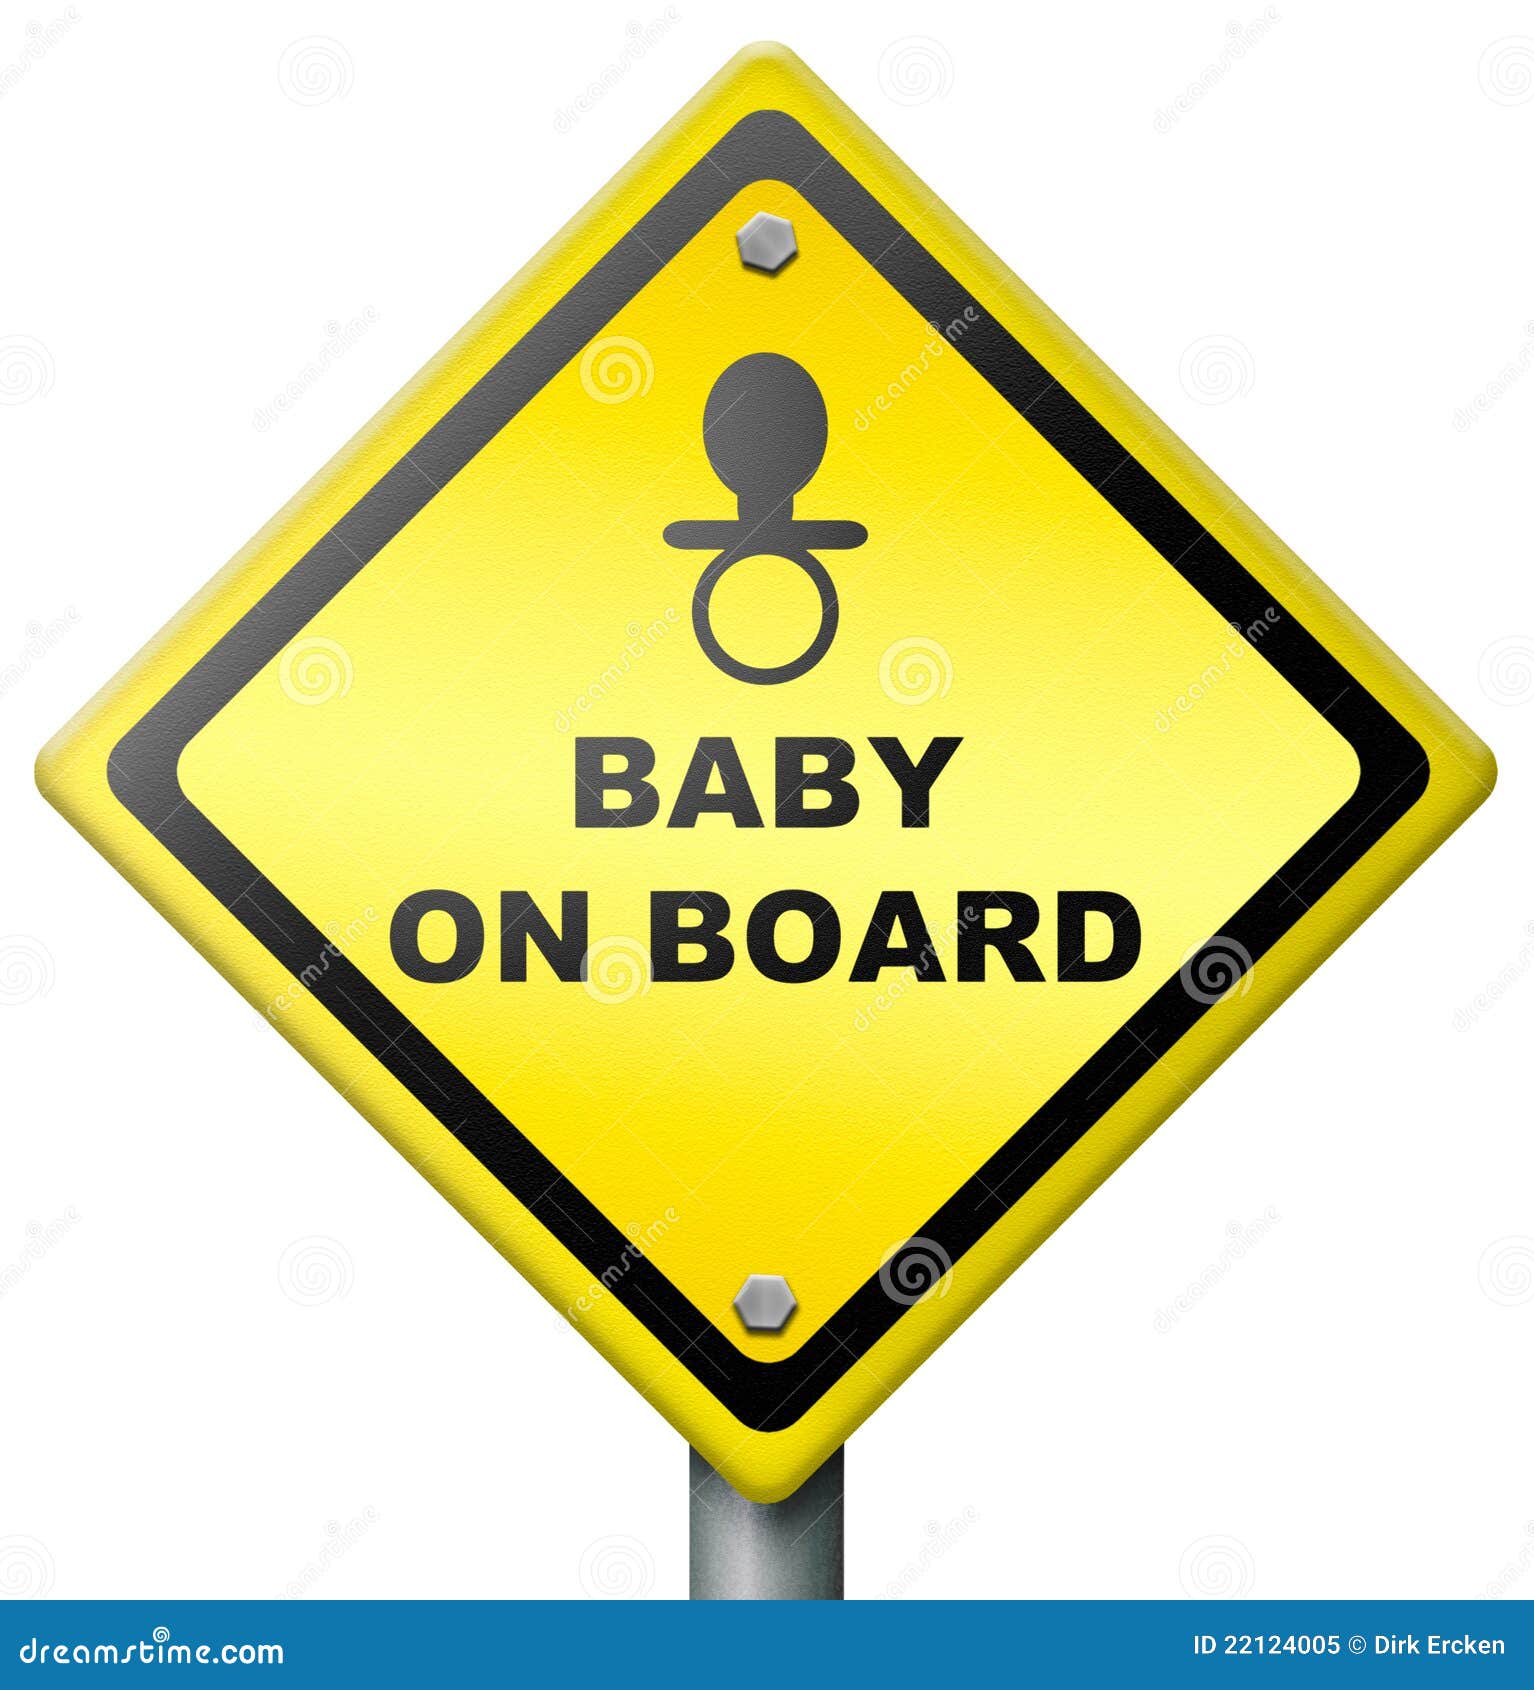 baby on board drive careful warning sign